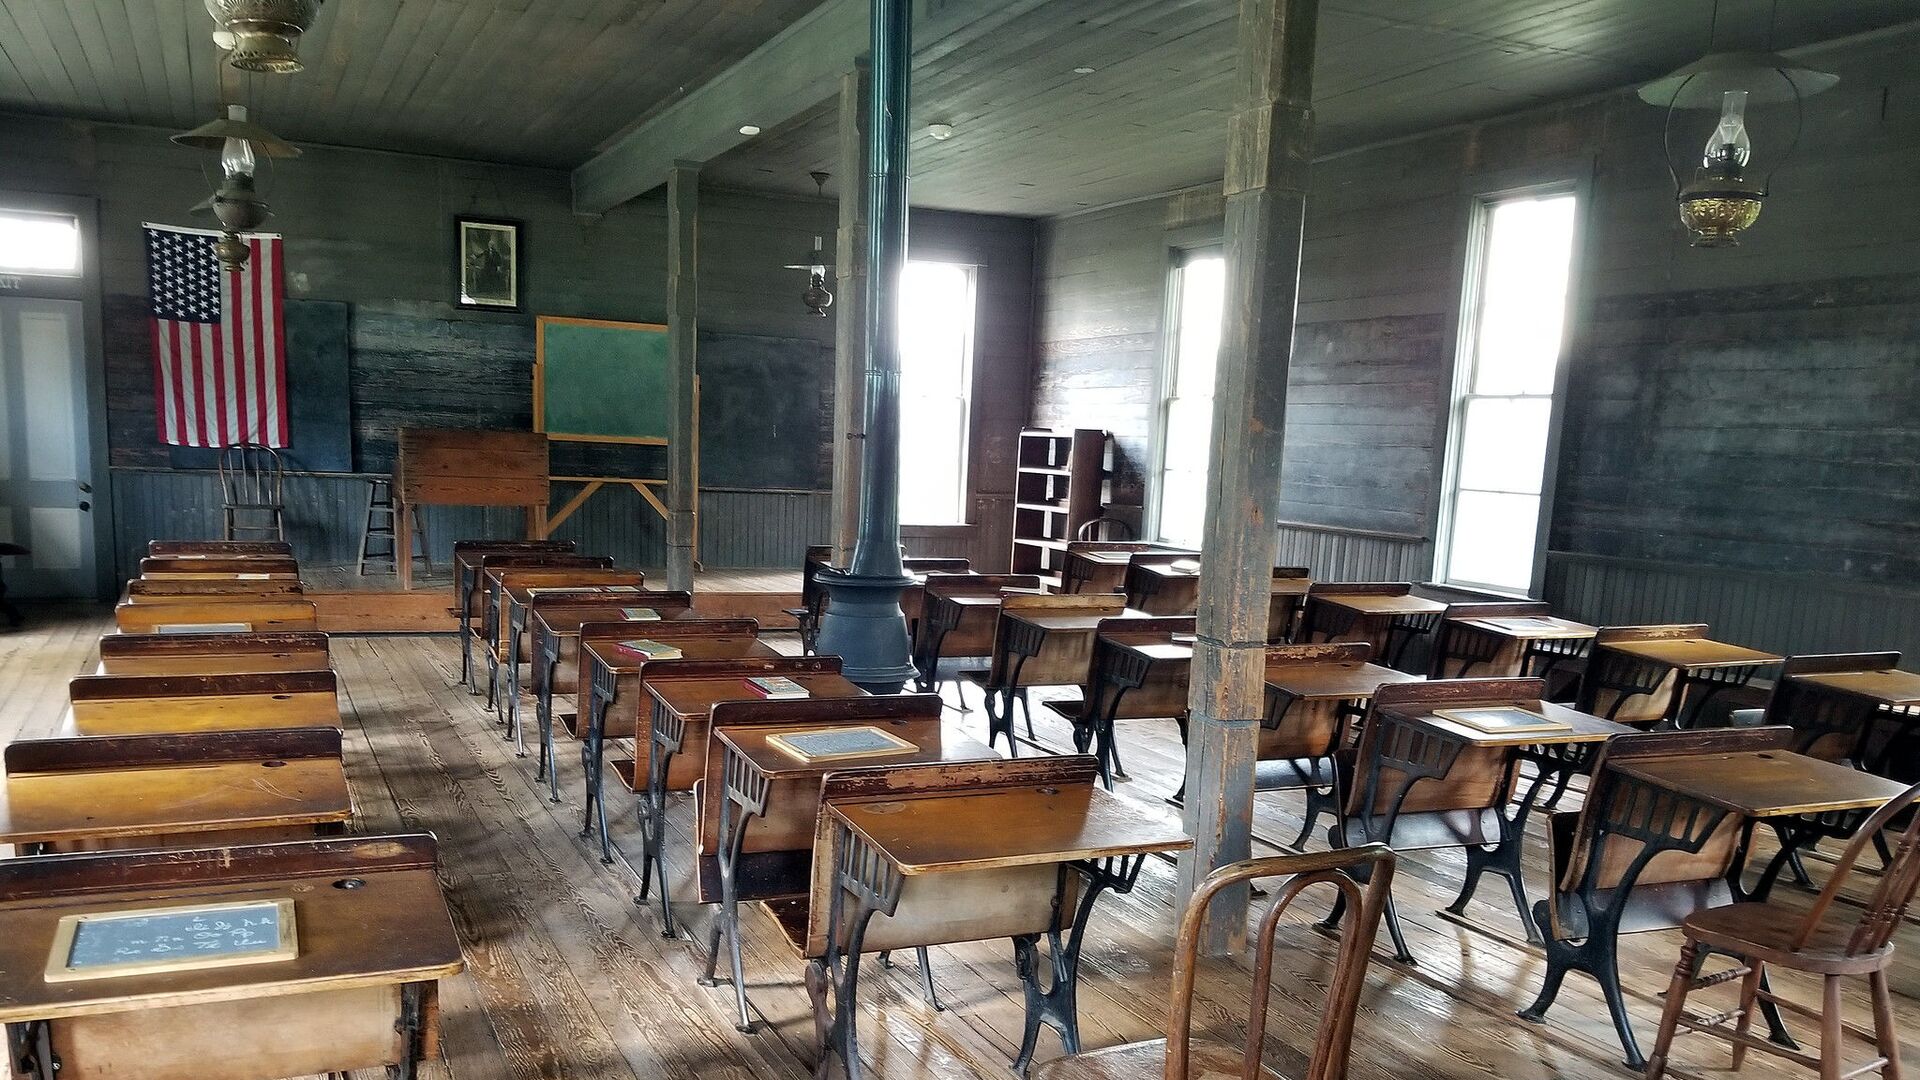 Prazna učionica u školi u Americi - Sputnik Srbija, 1920, 04.02.2021